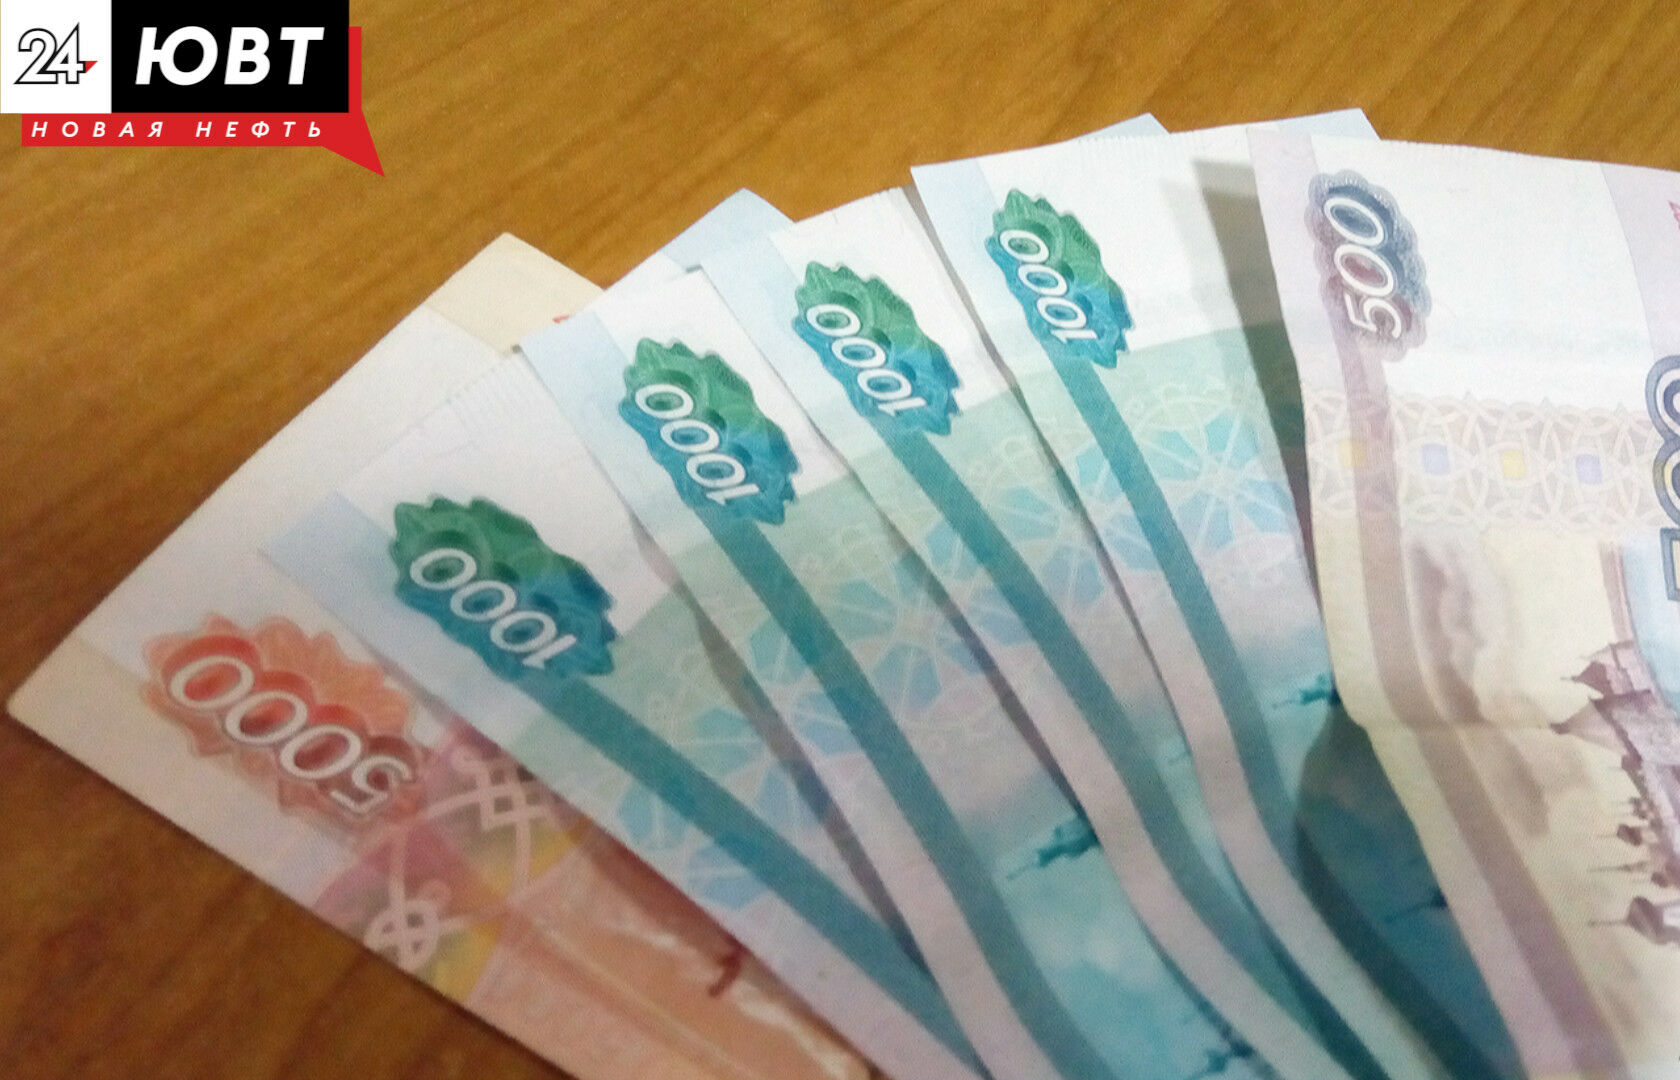 Продавцов овощей в Казани освободили от арендной платы для снижения цен «борщевого набора»